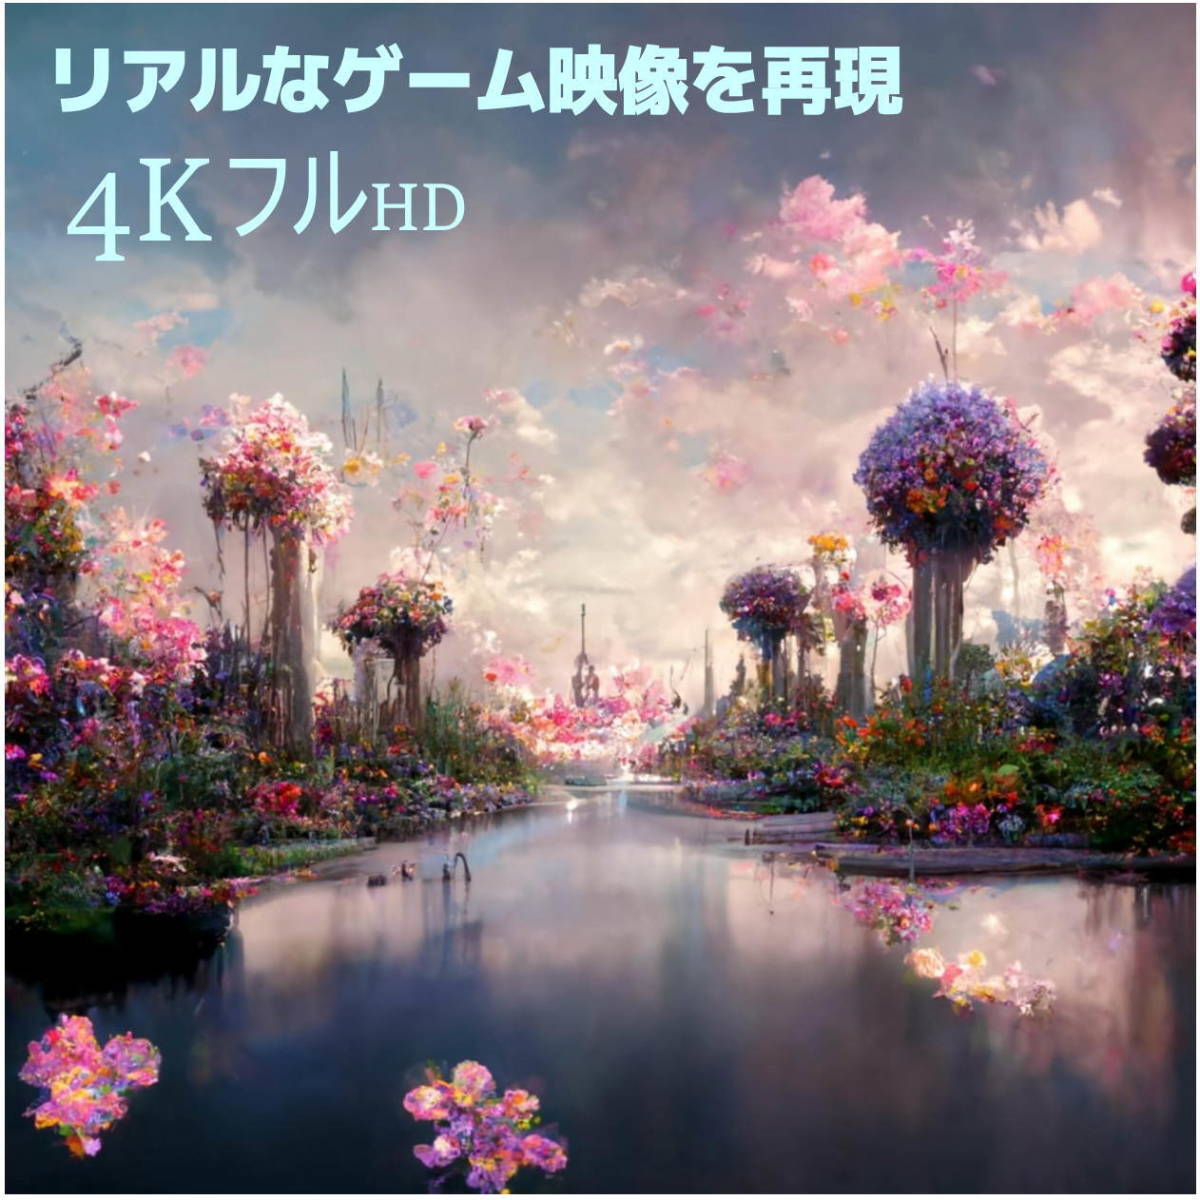 ☆★【送料無料】2m HDMI延長ケーブル 4K対応 Ver2.0 プレミアム HDMI A(オス/メス) COMON(カモン) 2HDMI-20E★☆_画像3